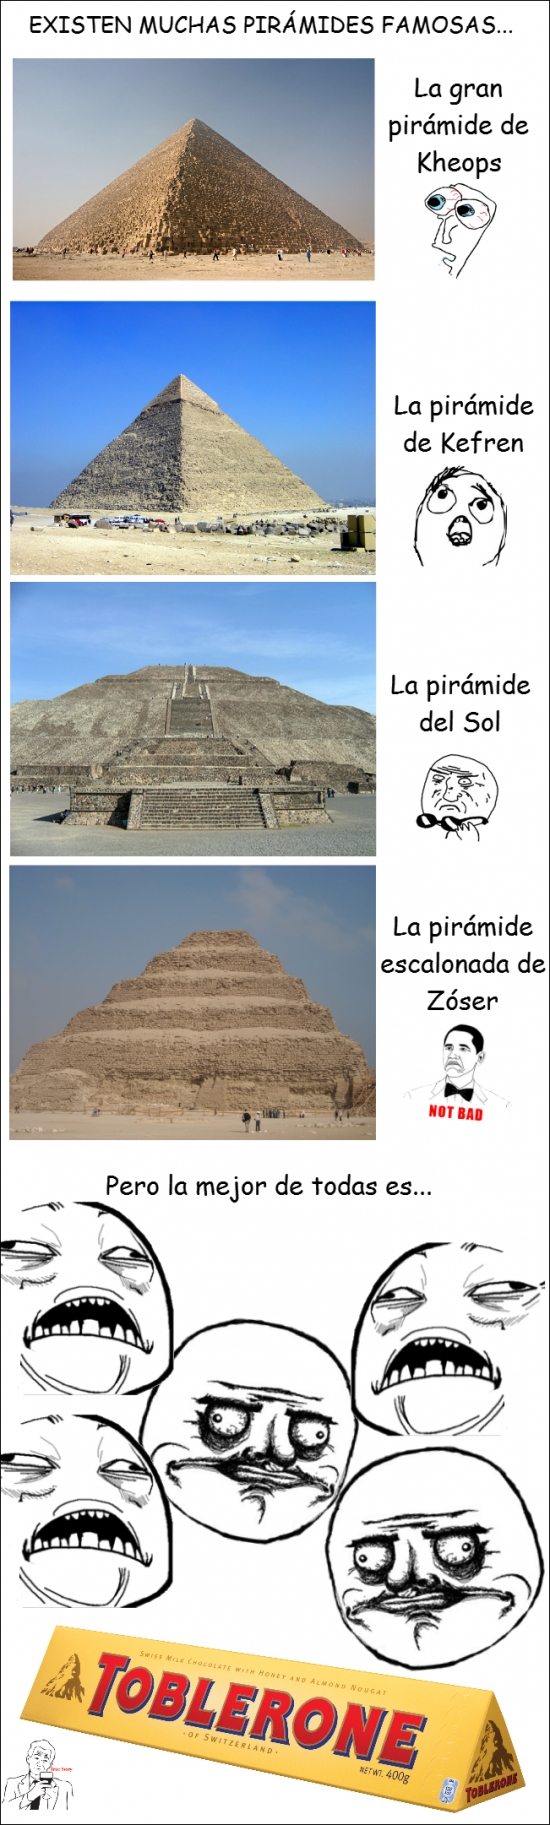 Me_gusta - La mejor pirámide